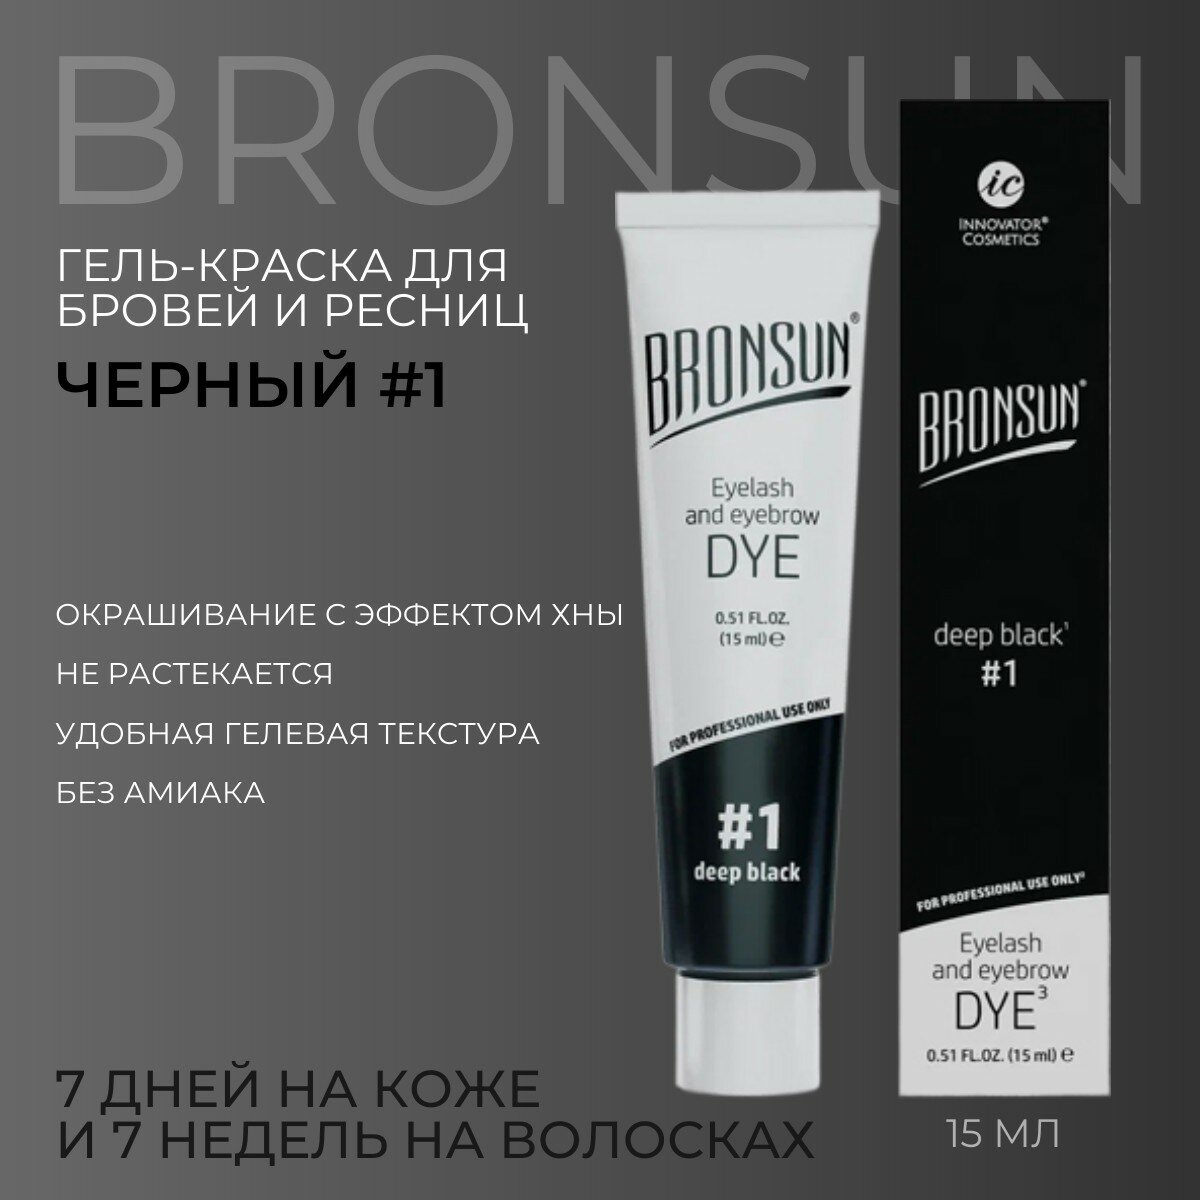 Краска для бровей и ресниц, черный цвет #1, Innovator Cosmetics BRONSUN deep black, 15 мл (Бронсан)